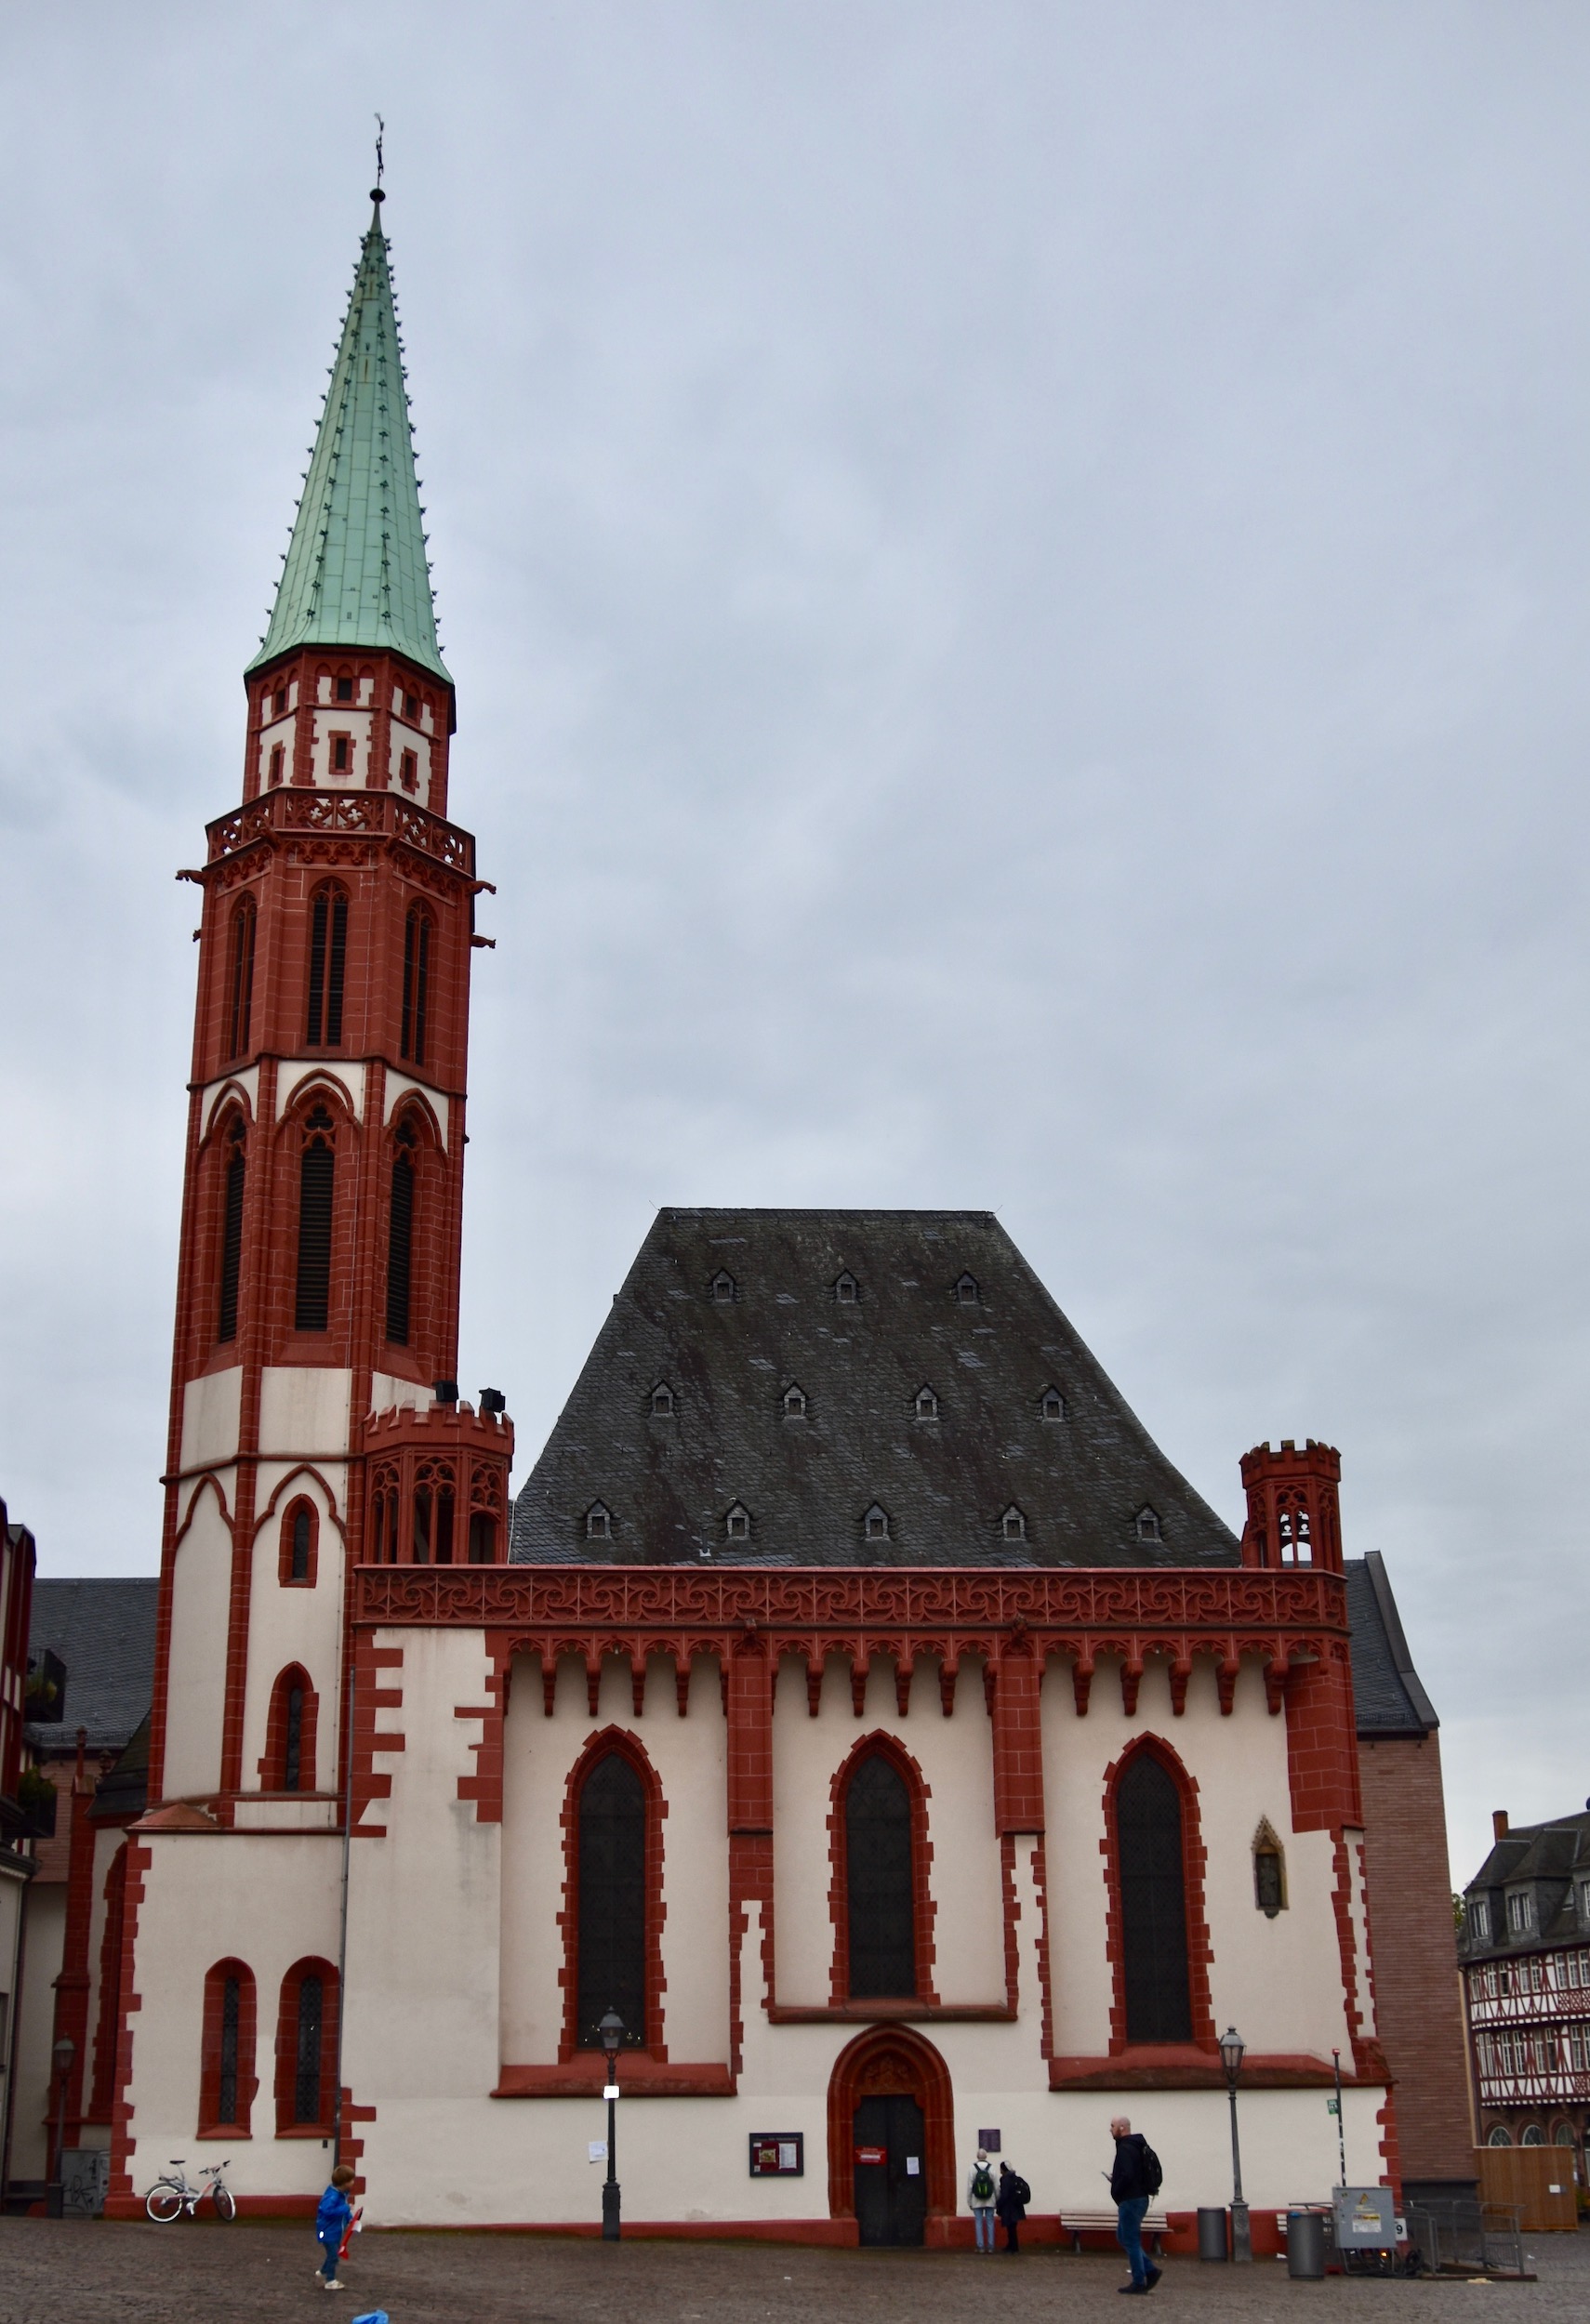 Old St. Nicholas Church, Frankfurt